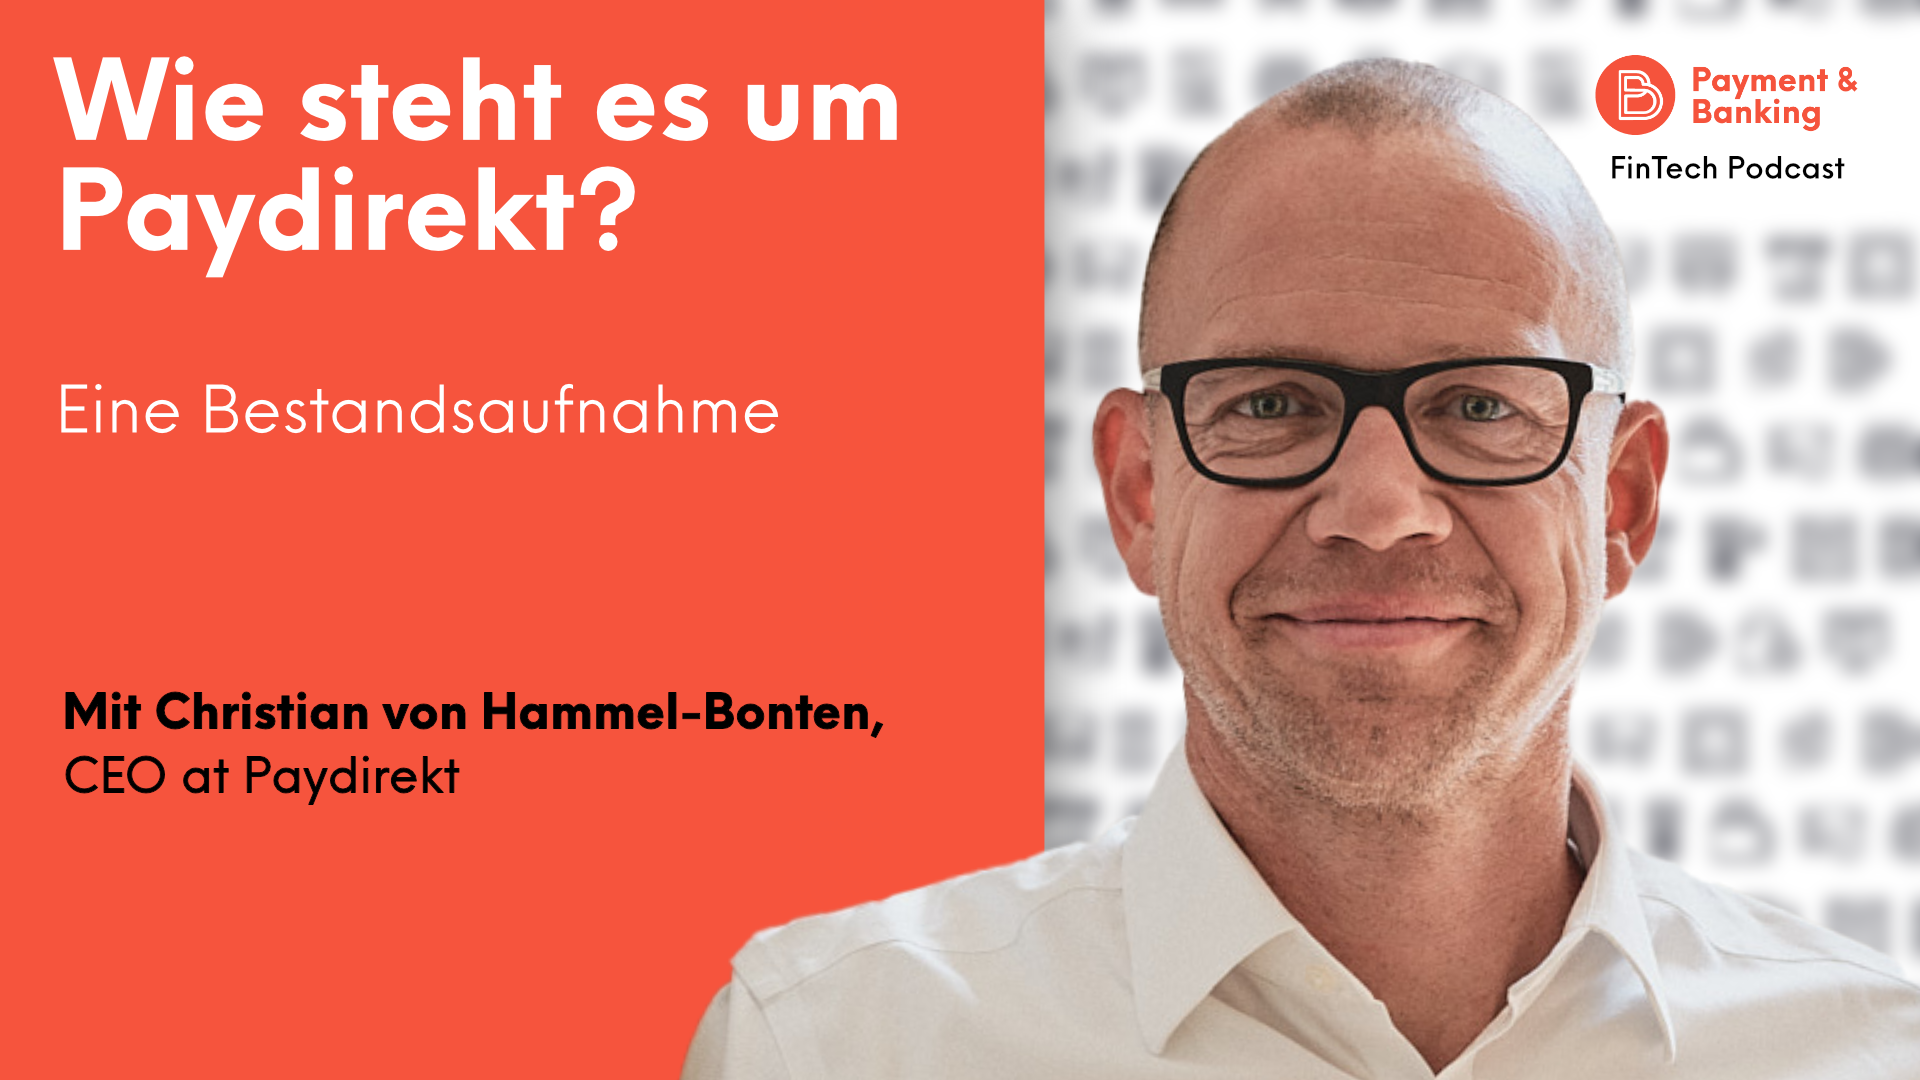 Christian von Hammel-Bonten ist CEO von Paydirekt und spricht in dieser Episode des FinTech-Podcasts mit Jochen Siegert über die Vergangenheit und die Zukunft des Unternehmens.